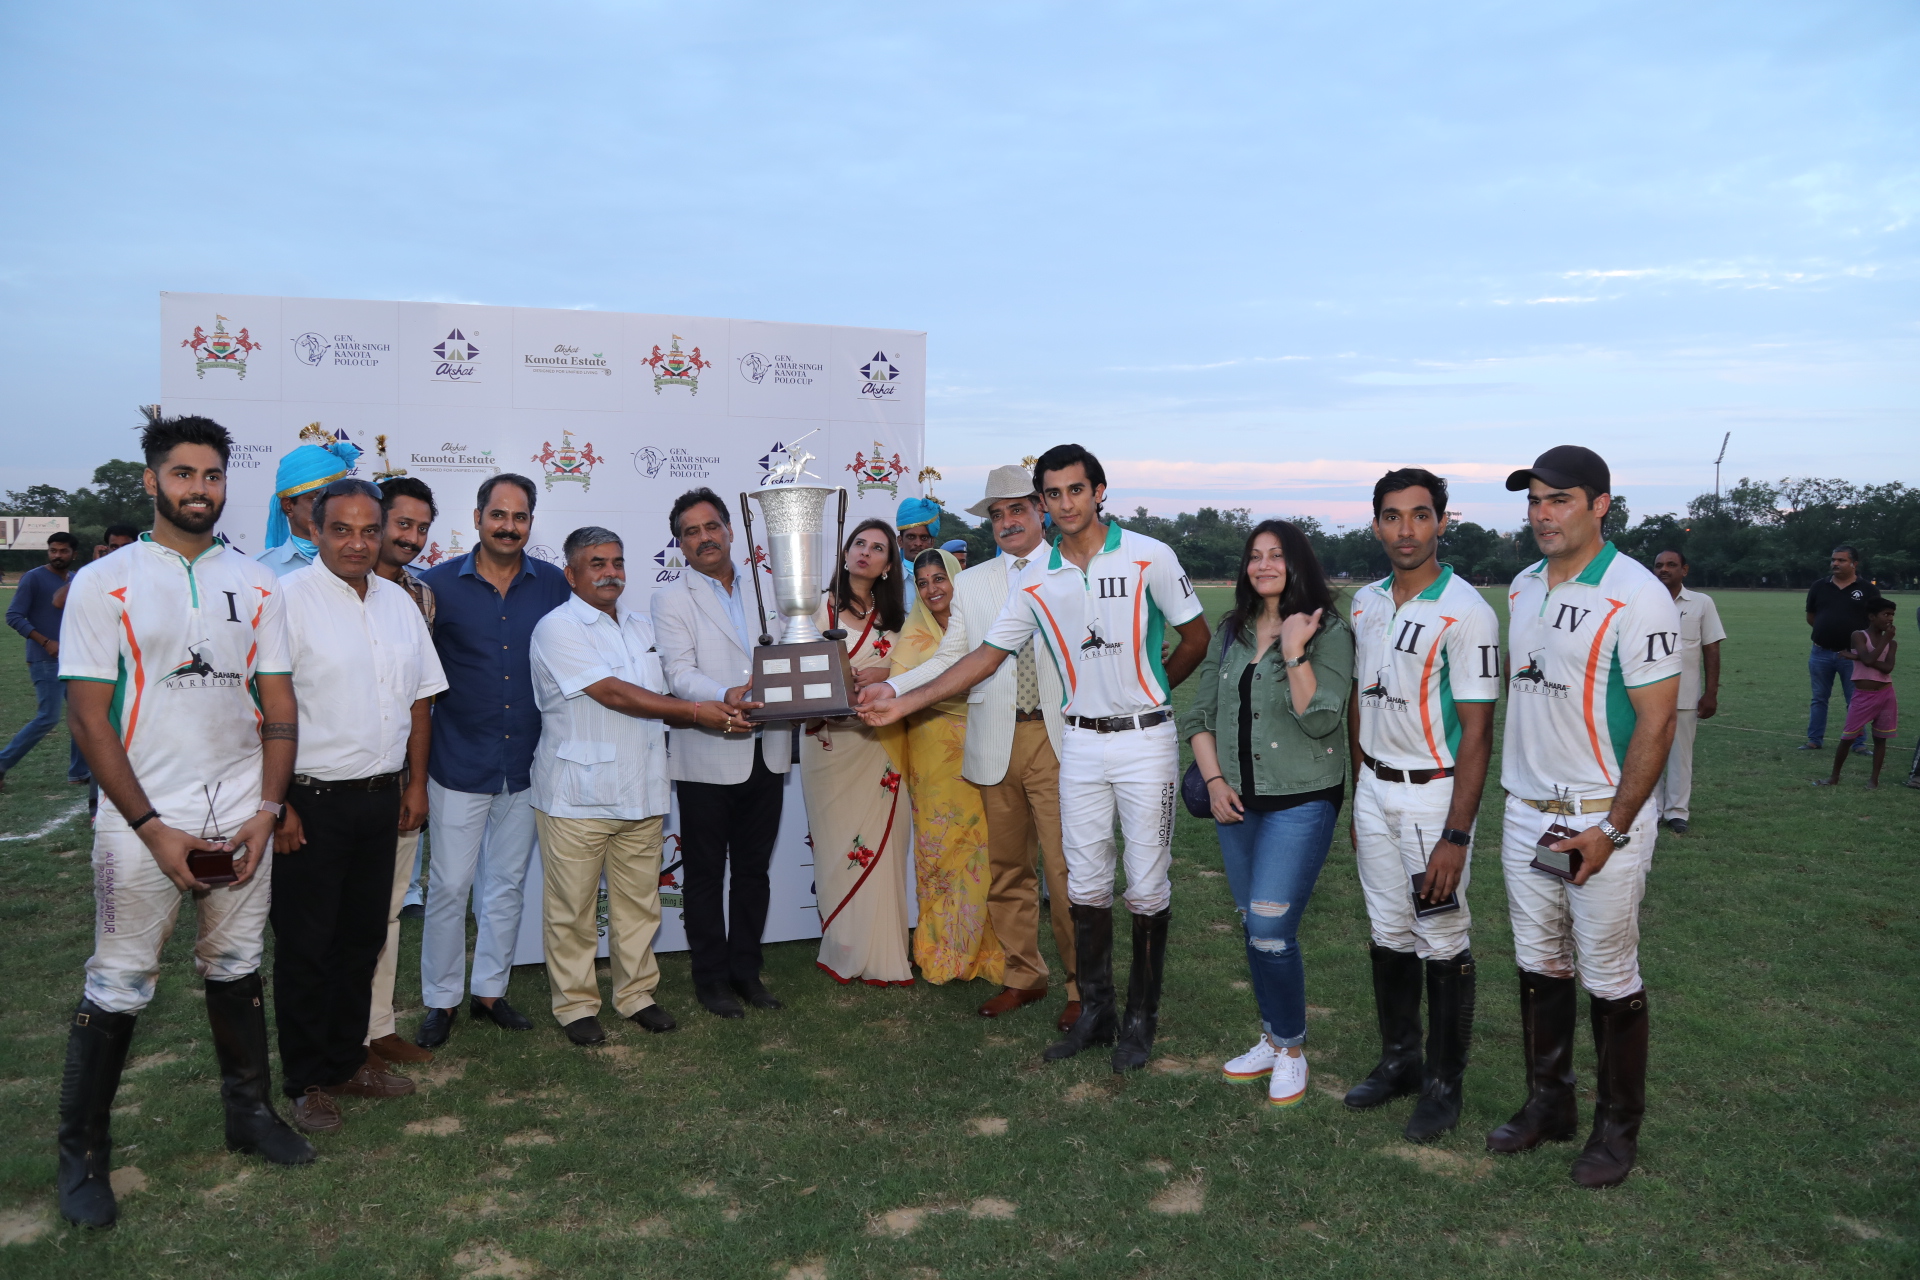 jaipur polo season 2019 la polo